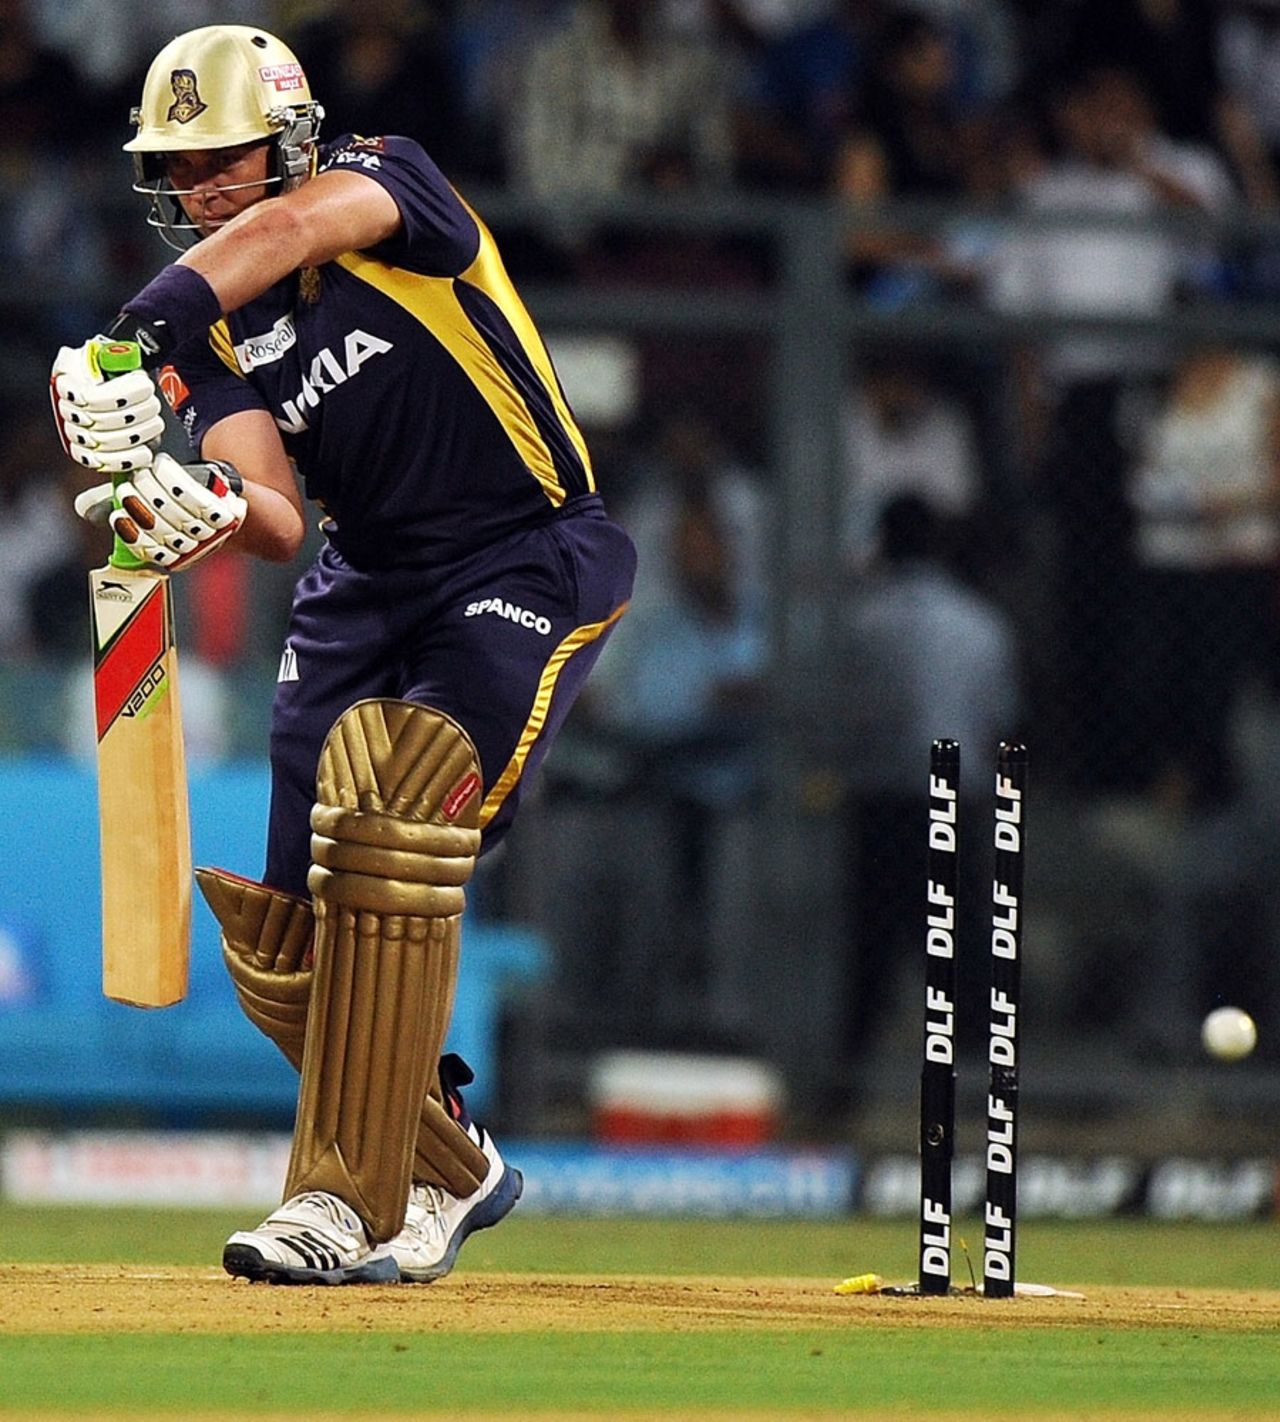 Jacques Kallis was bowled first ball, Mumbai Indians v Kolkata Knight Riders, IPL, Mumbai, May 16, 2012